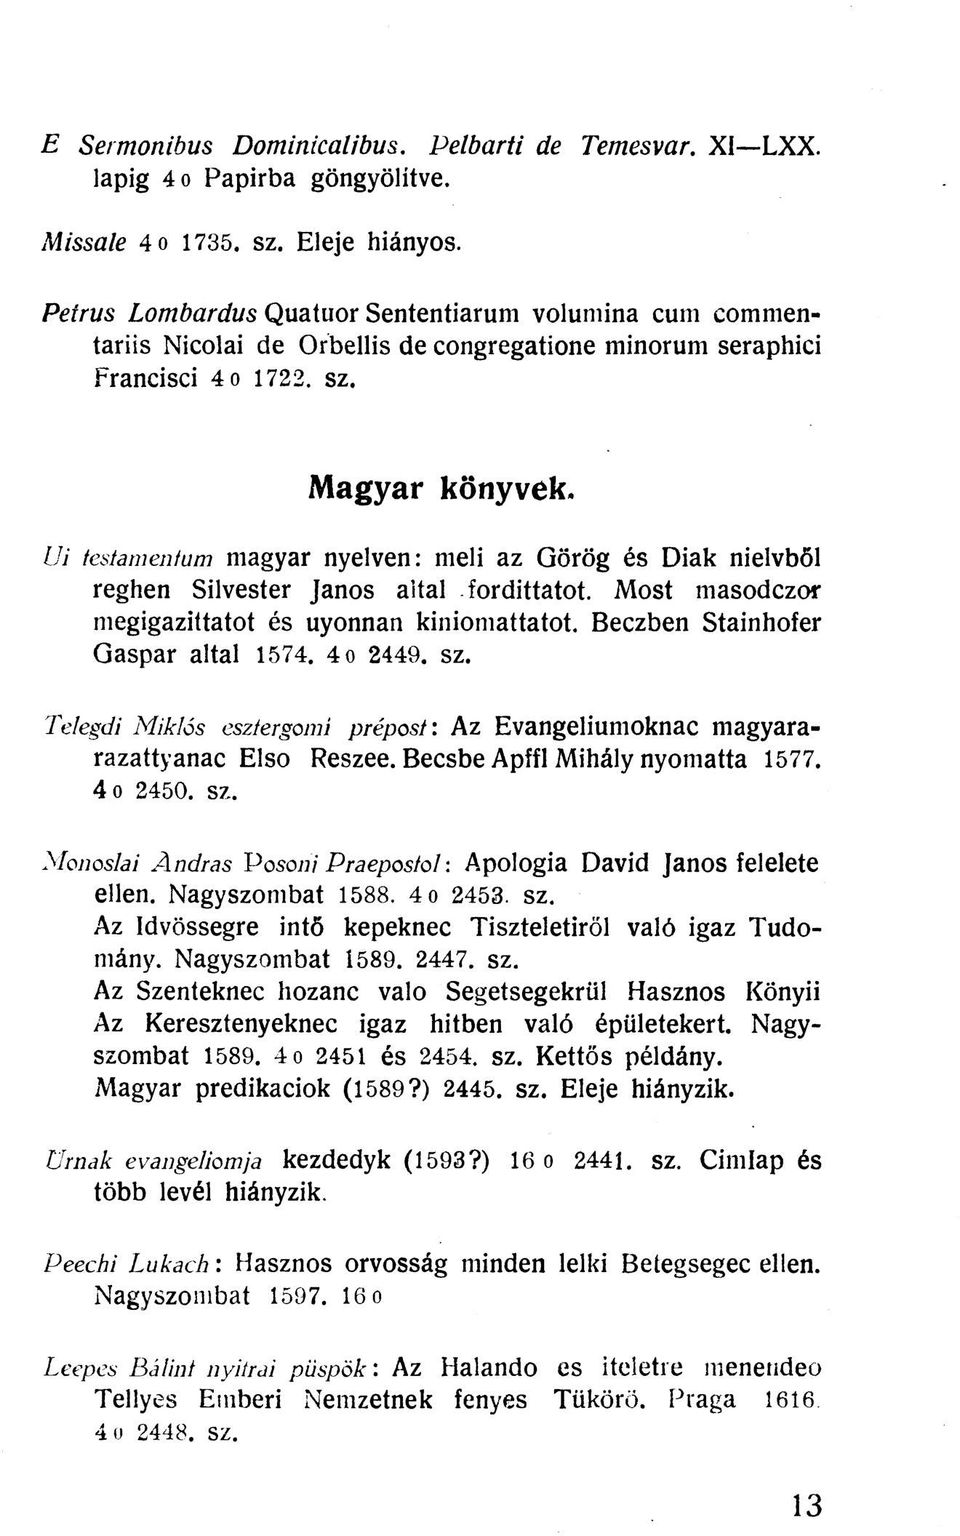 ÍJi testamentum magyar nyelven: meli az Görög és Diák nielvből reghen Silvester János aital fordittatot. Most masodczor megigazittatot és uyonnan kiniomattatot. Beczben Stainhofer Gáspár altal 1574.